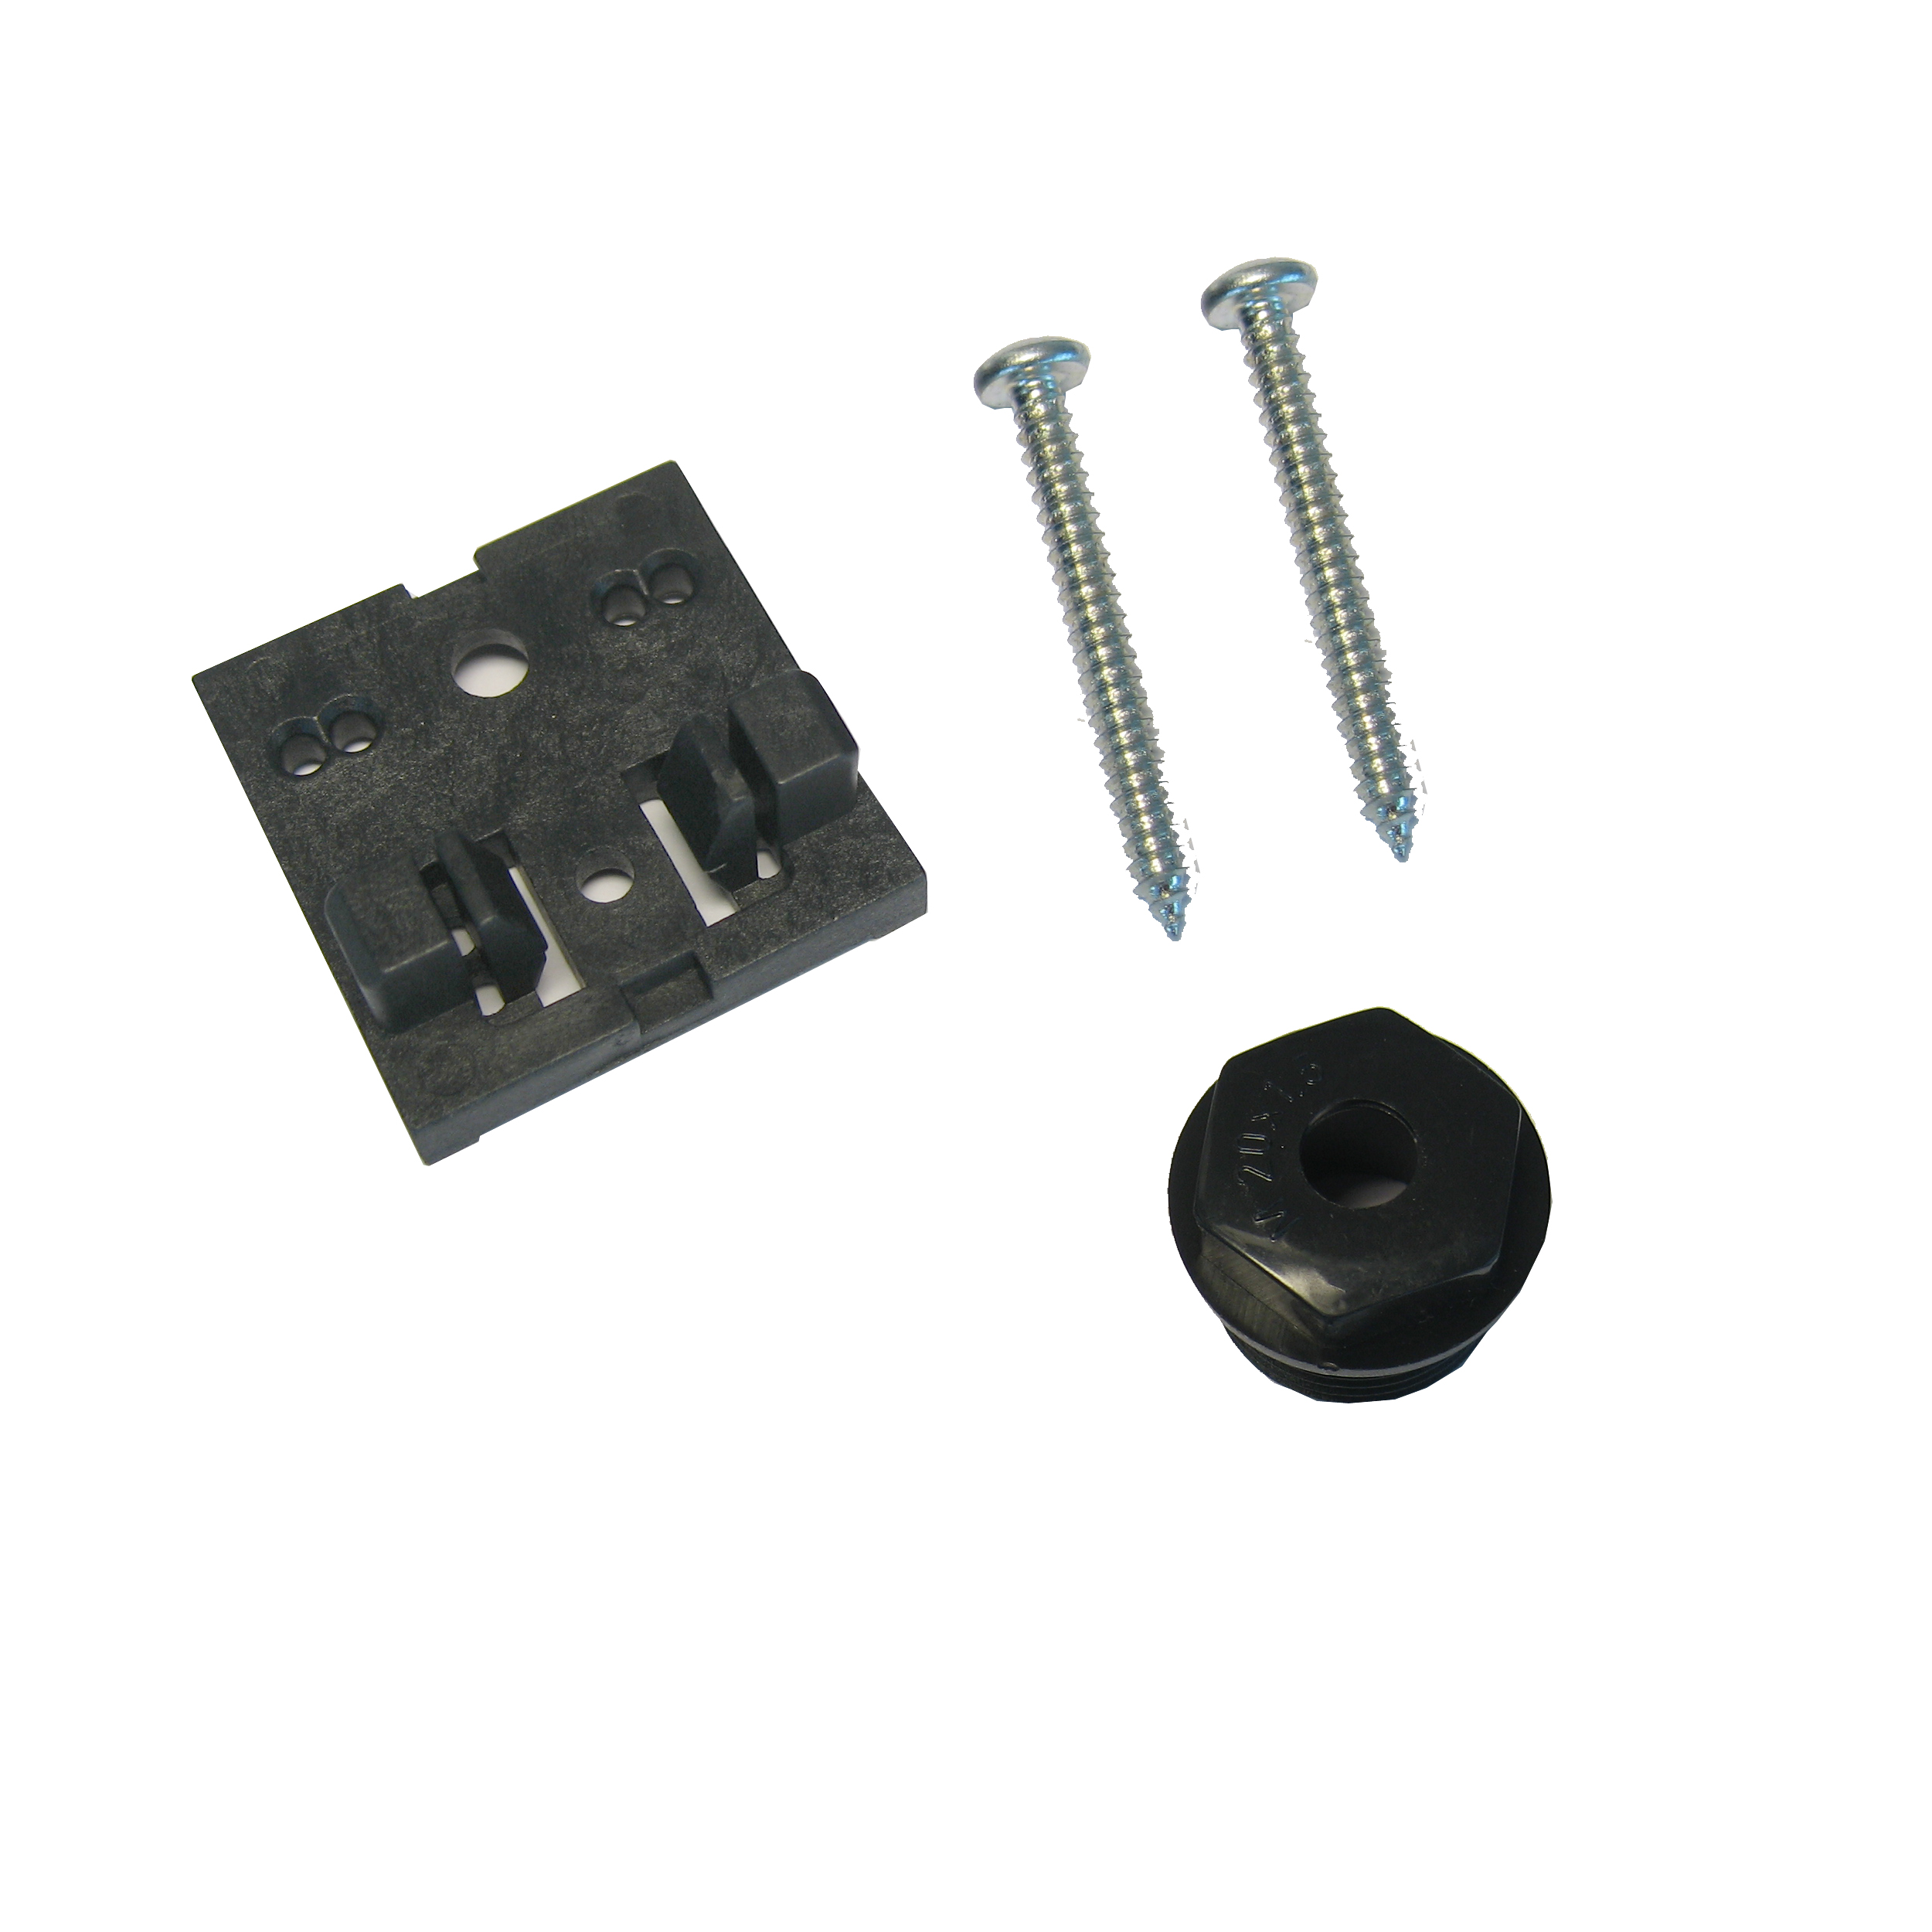 Abbildung Montagesatz für Türkontaktschalter: | Adapter für TS, 2 Schrauben, Würgenippel